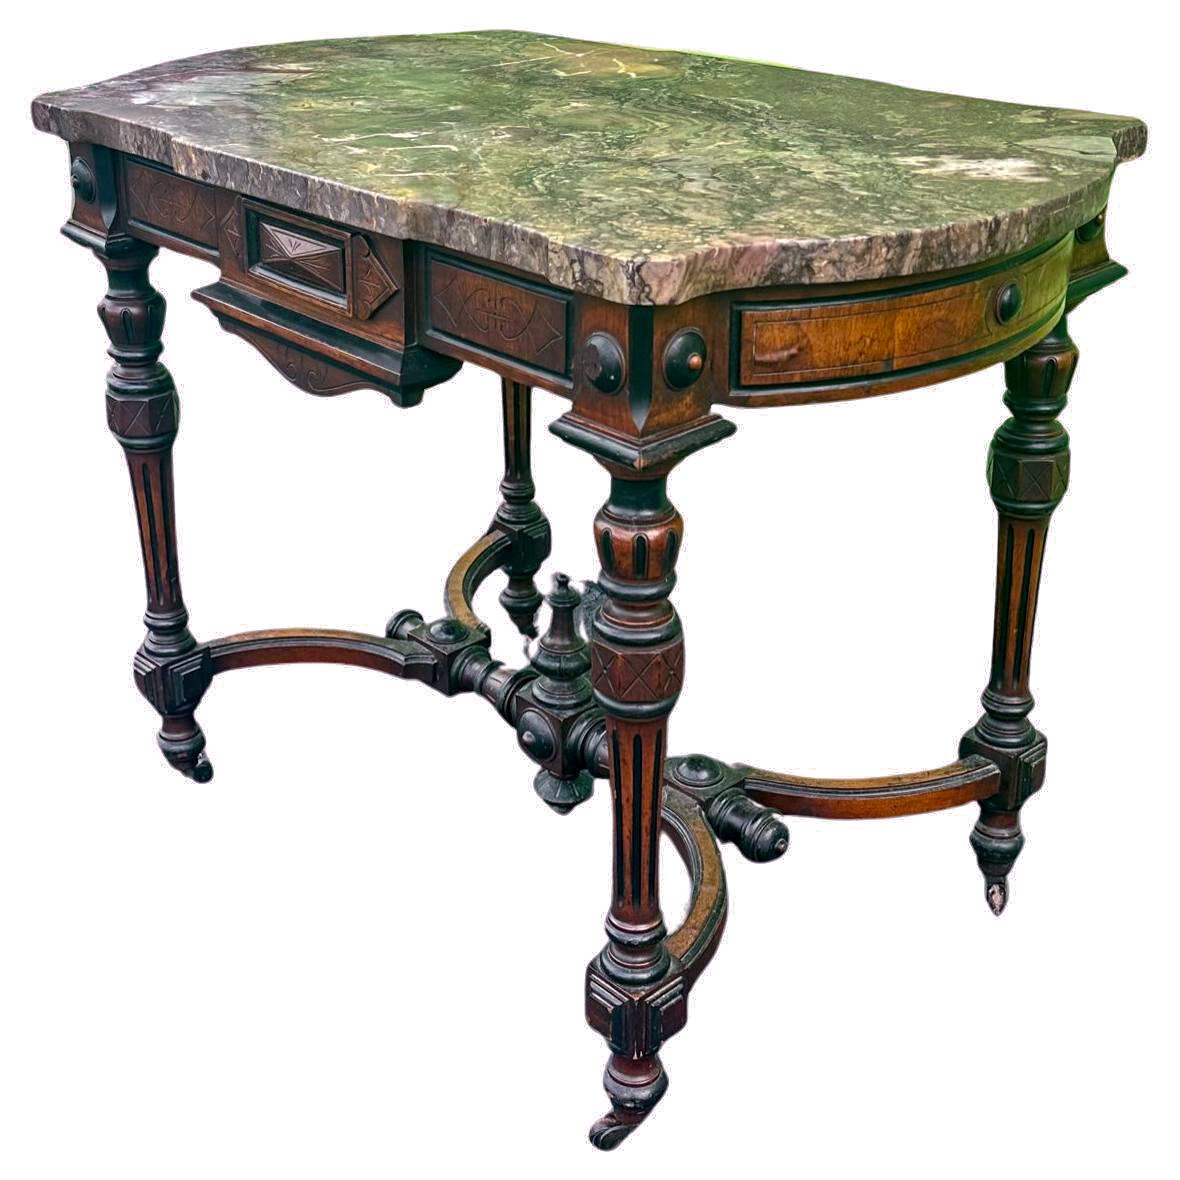 Französisch 19. Jahrhundert Napoleon III Periode Marmorplatte Tisch

Der antike Mitteltisch ist aus Nussbaum, ebonisiertem und exotischem Holz gefertigt. Die wunderschöne Originalplatte aus Rouge Royal-Marmor krönt diesen herrlichen Tisch. Er steht